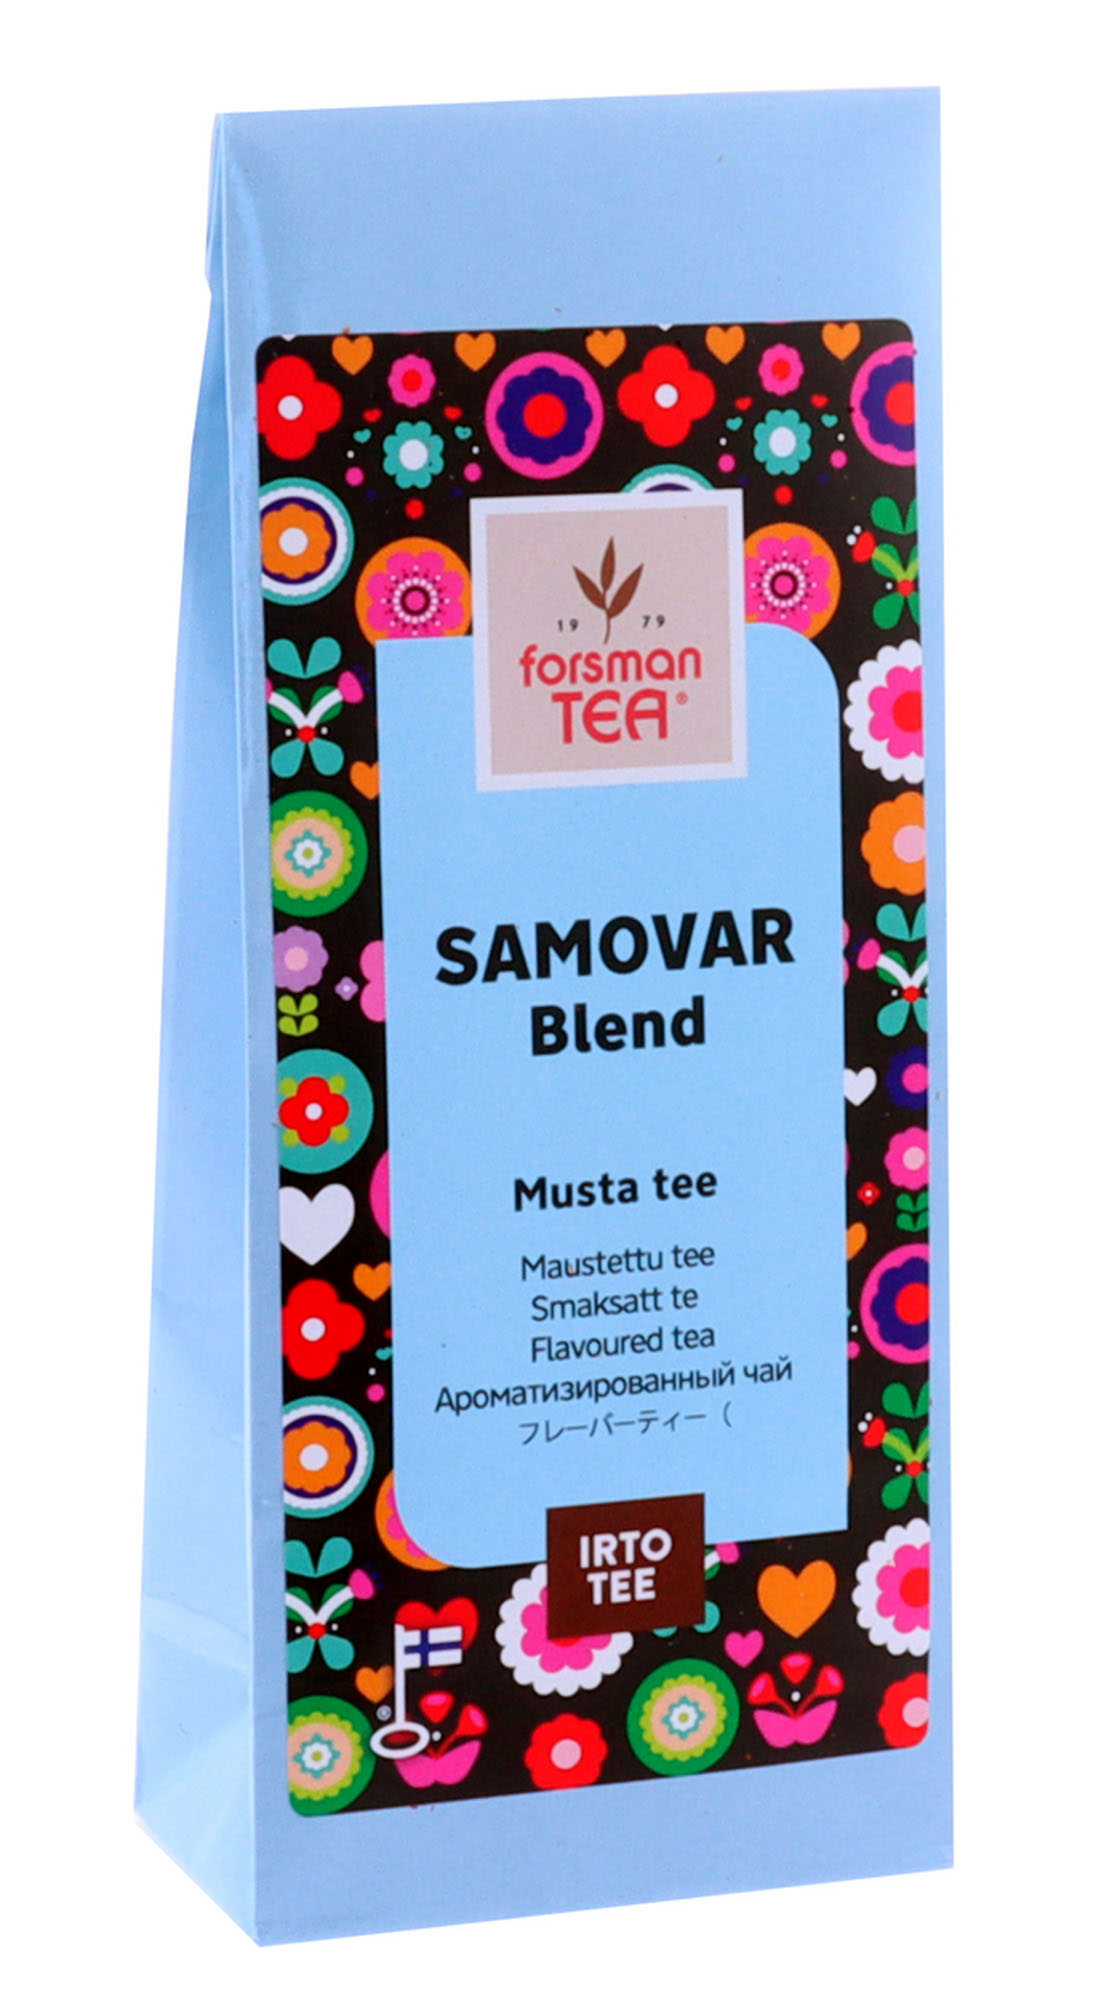 Forsman tea Samovar Blend black tea 60g